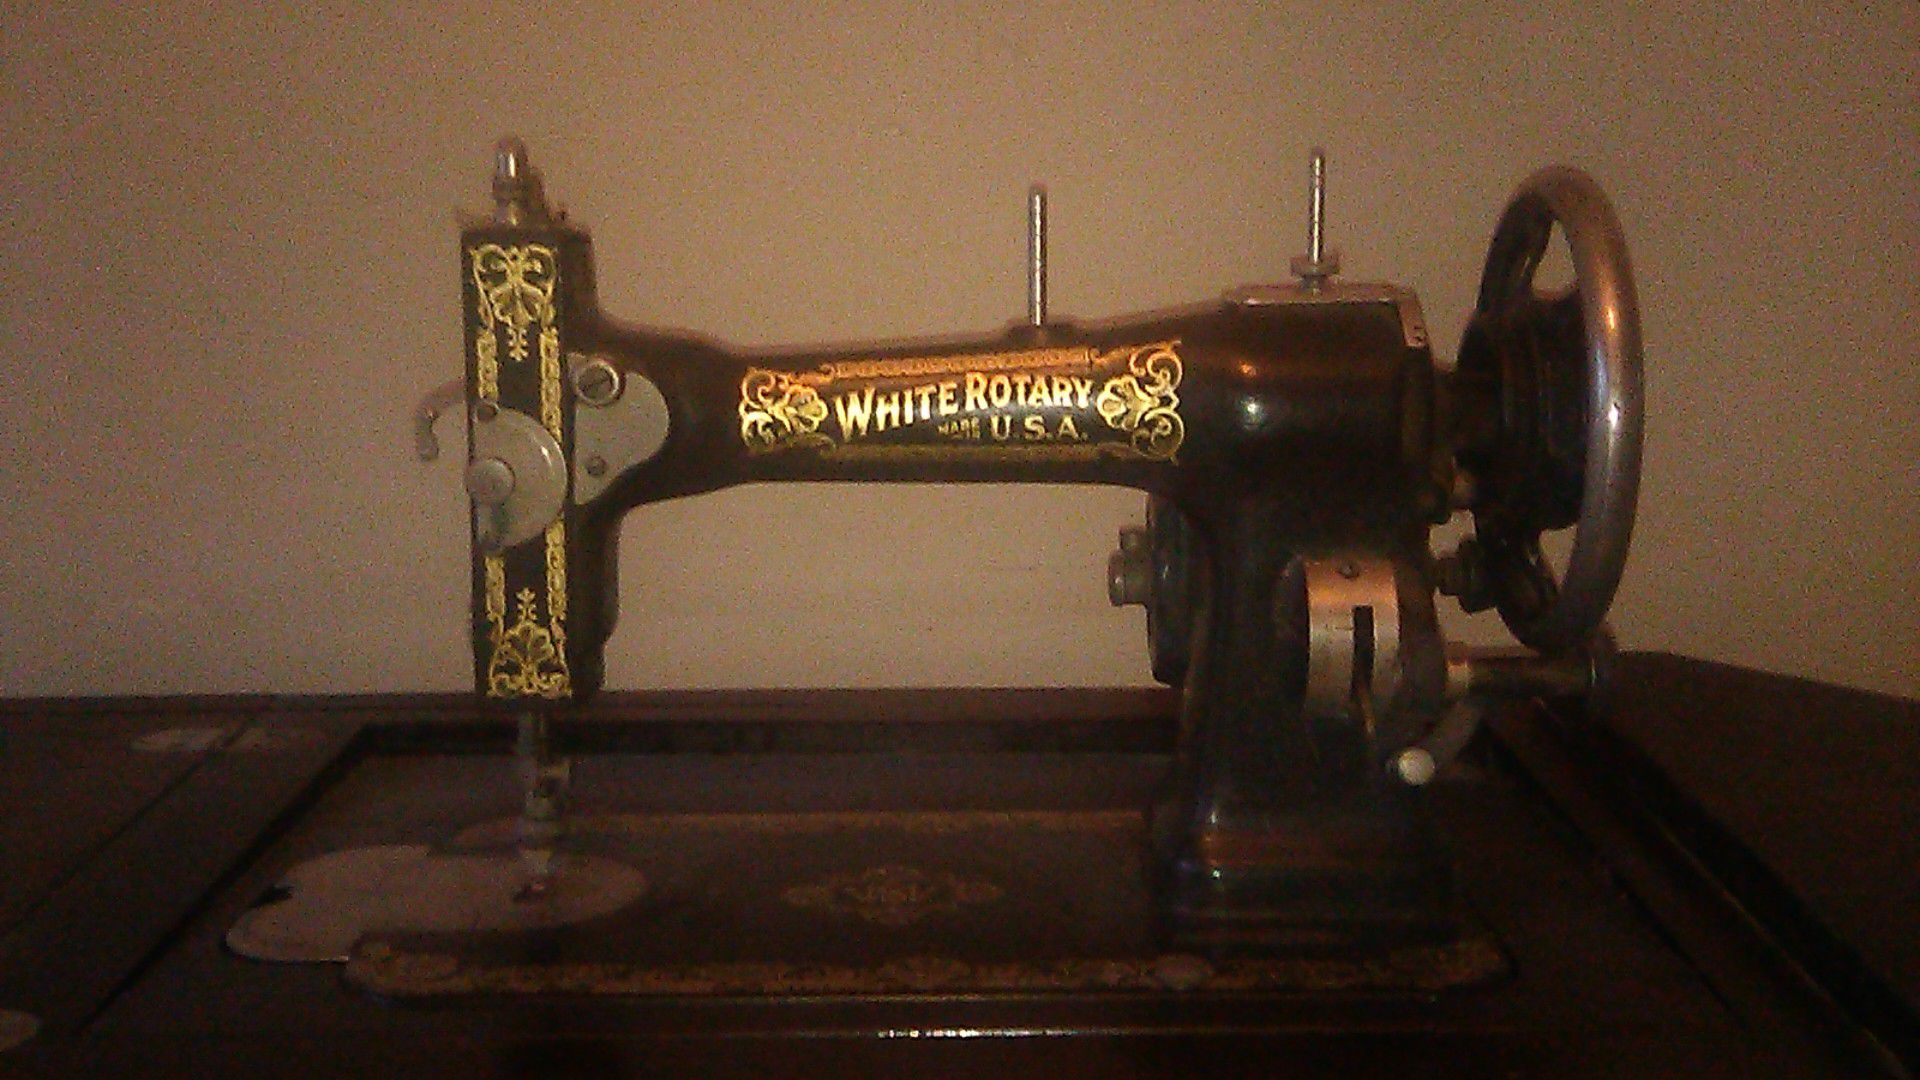 White rotary Sewing machine